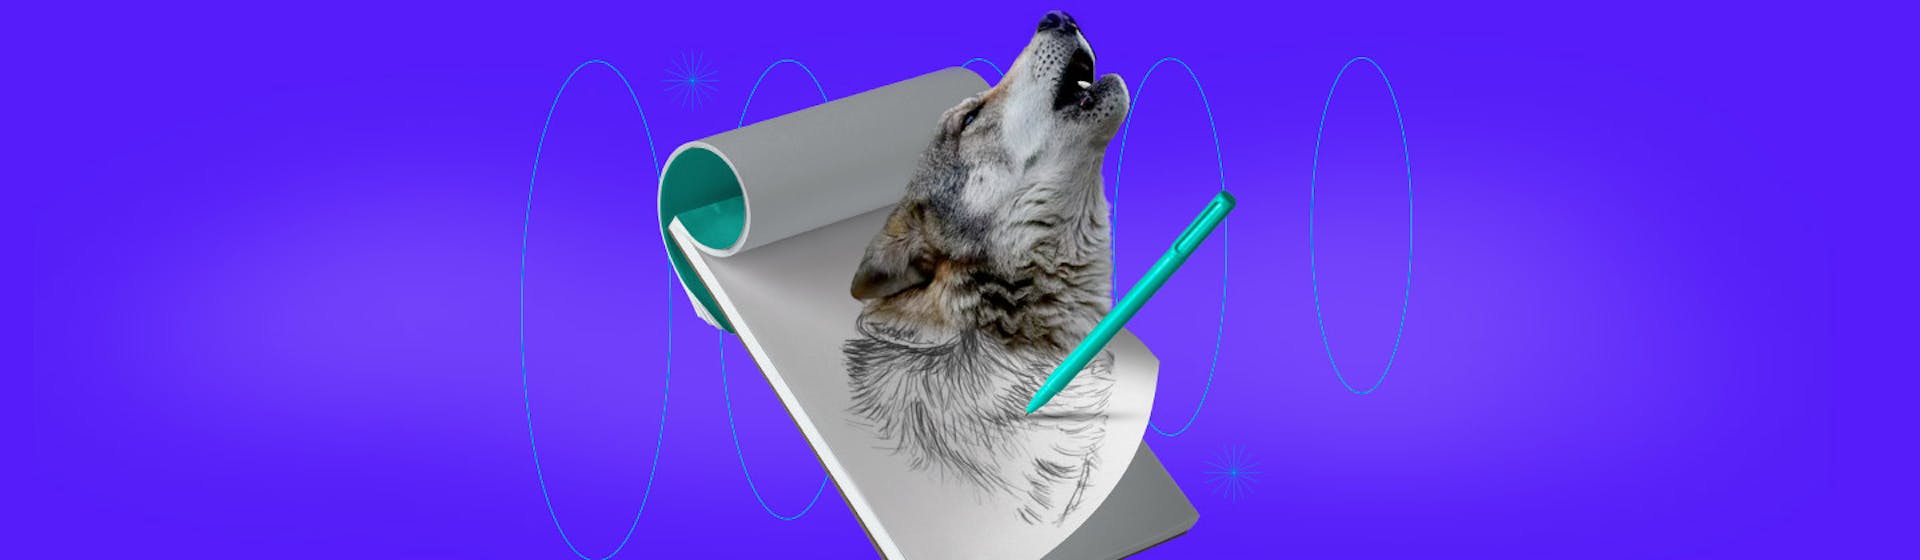 ¿Cómo dibujar un lobo realista? Aprende paso a paso y conviértete en dibujante experto